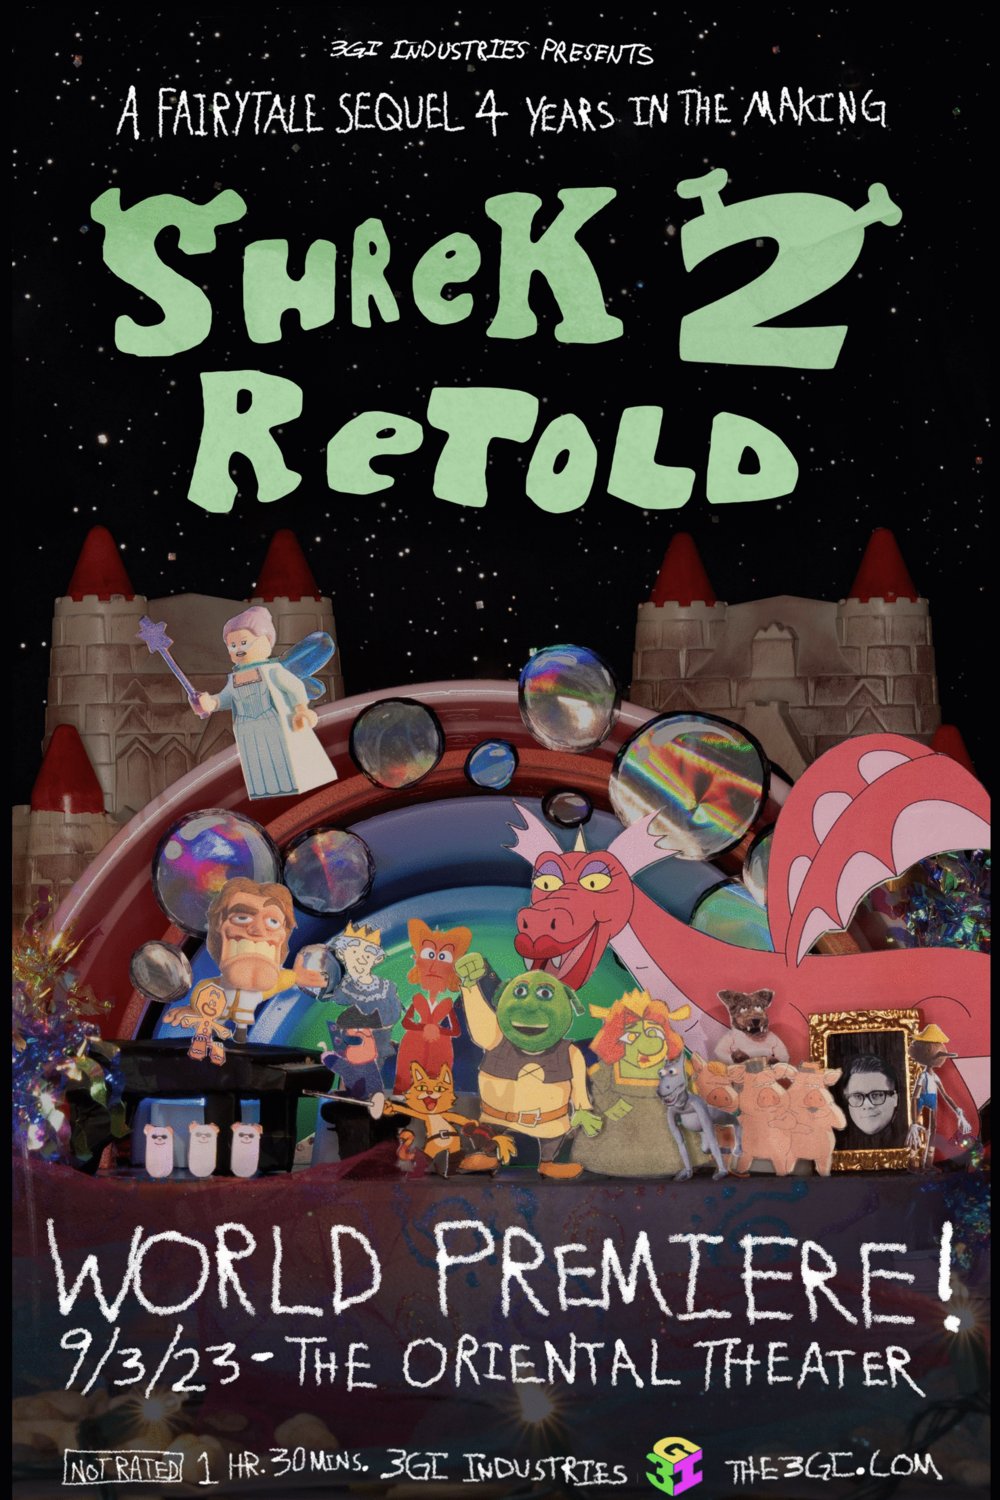 Poster of the movie Shrek 2 Retold